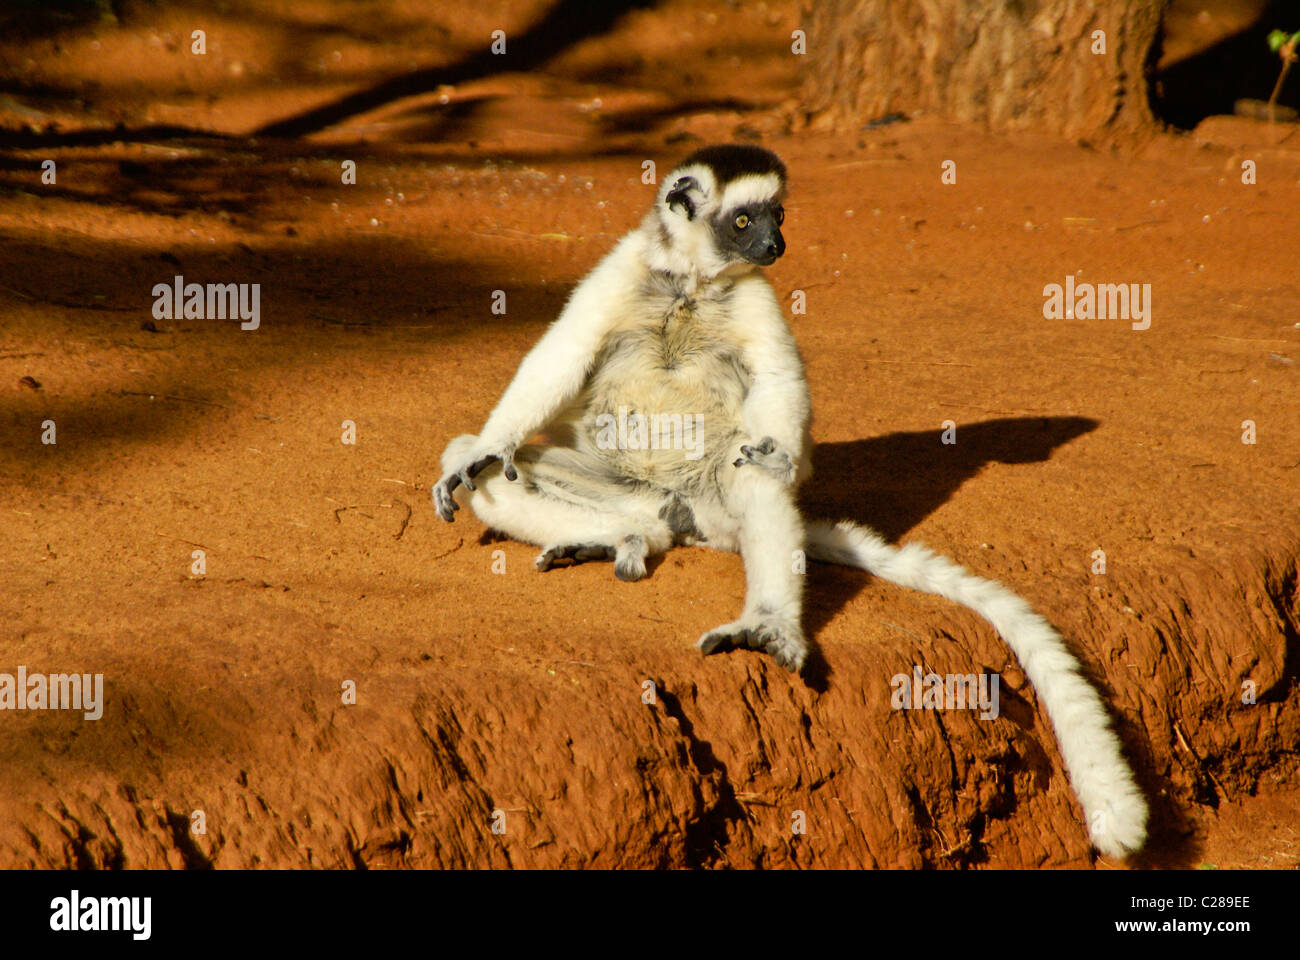 Verreaux's sifaka sunning itself, Madagascar Stock Photo